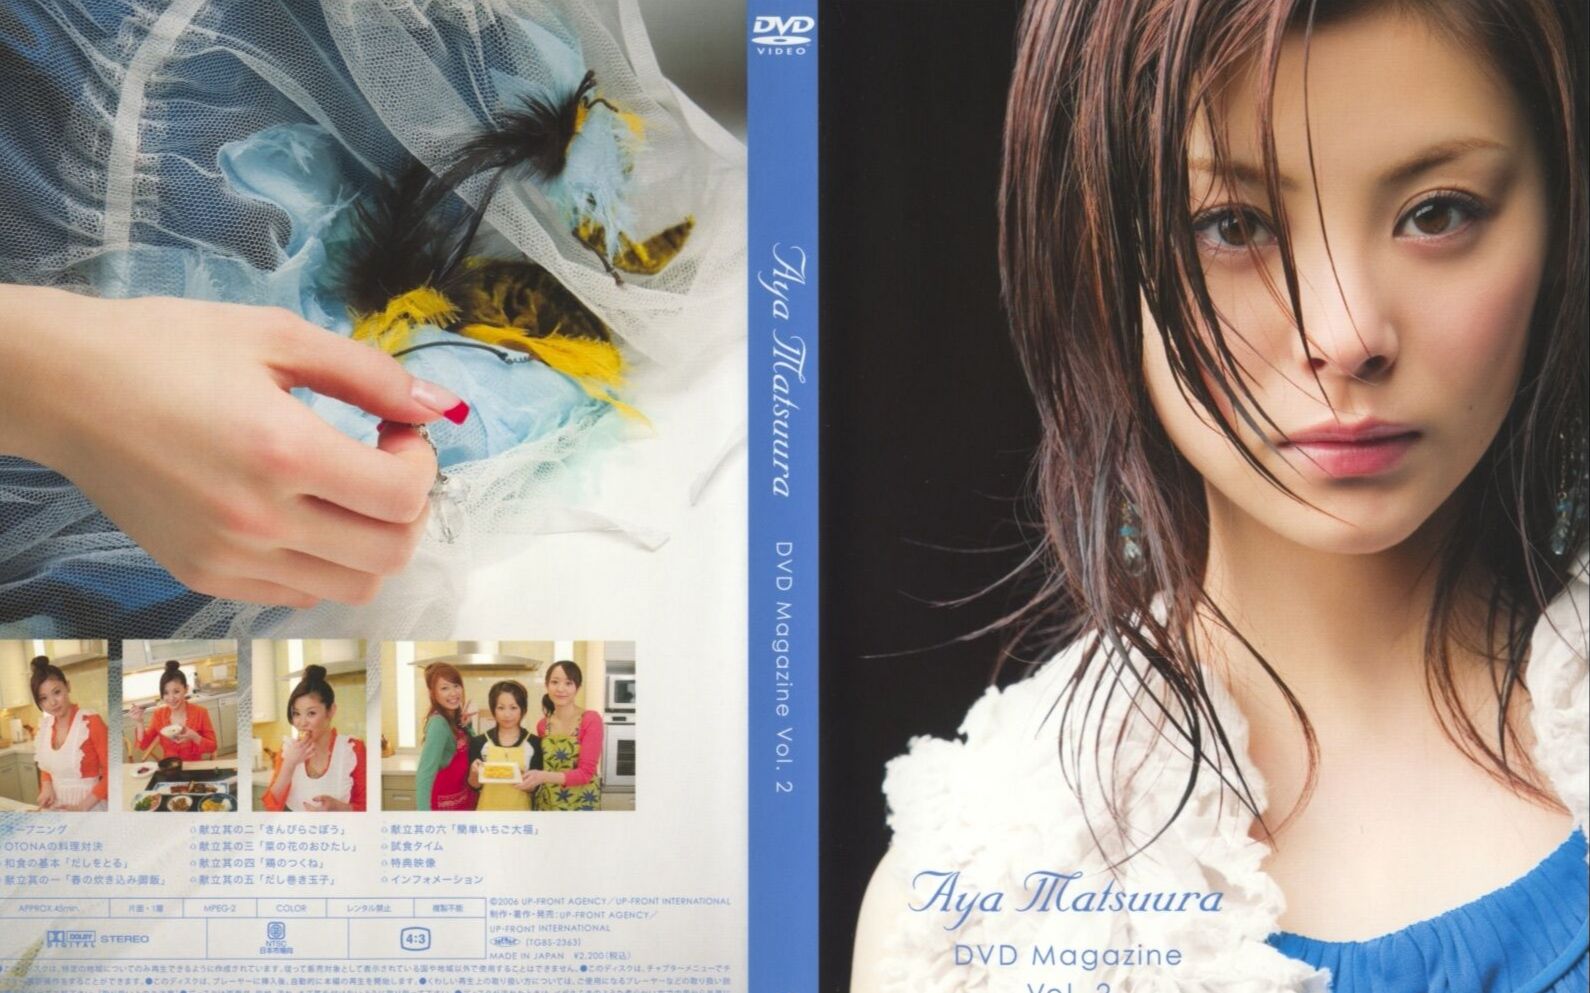 松浦亜弥 マニアックライブ VOL.2 DVD